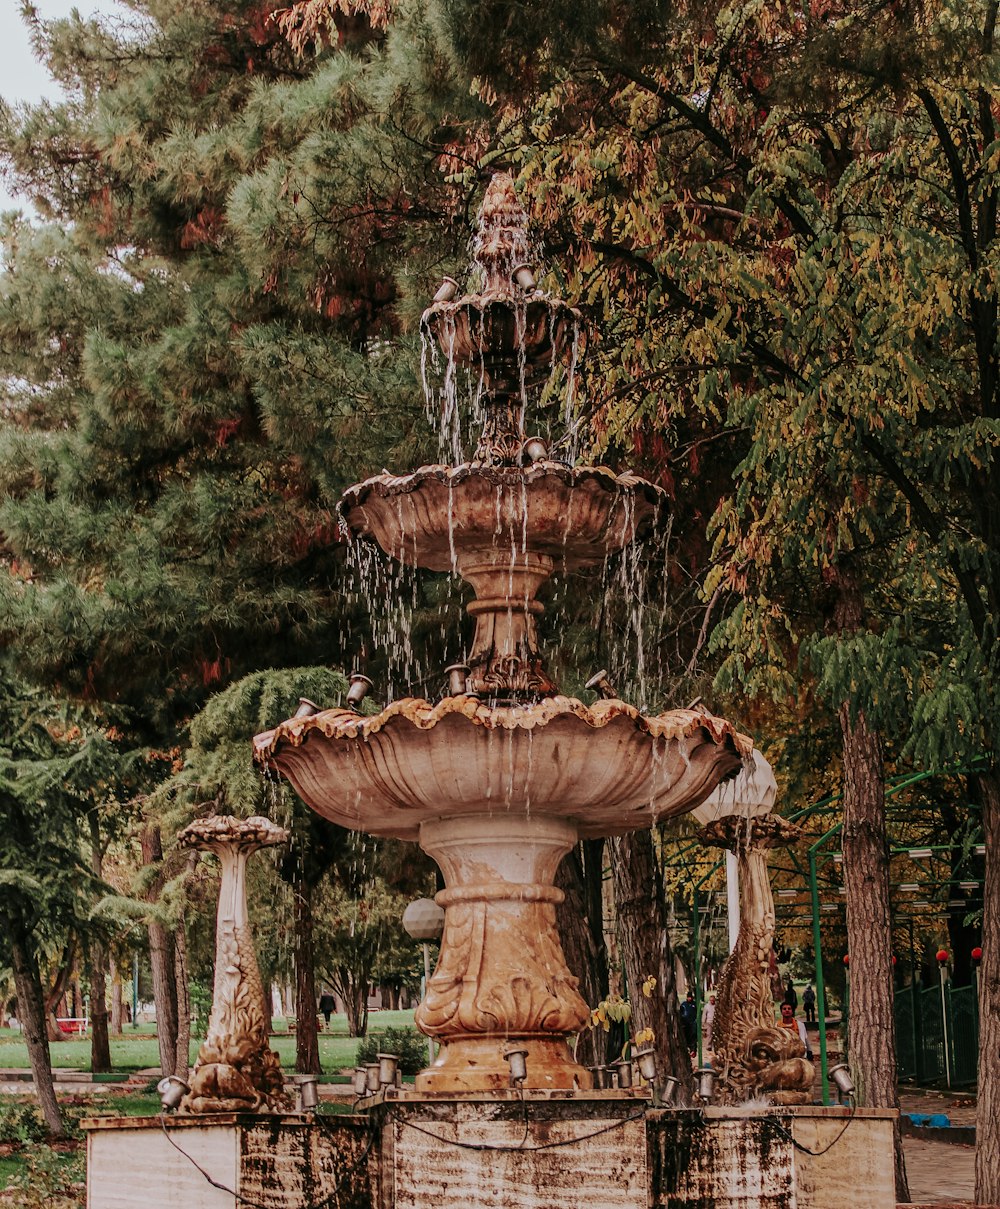 a fountain in a park